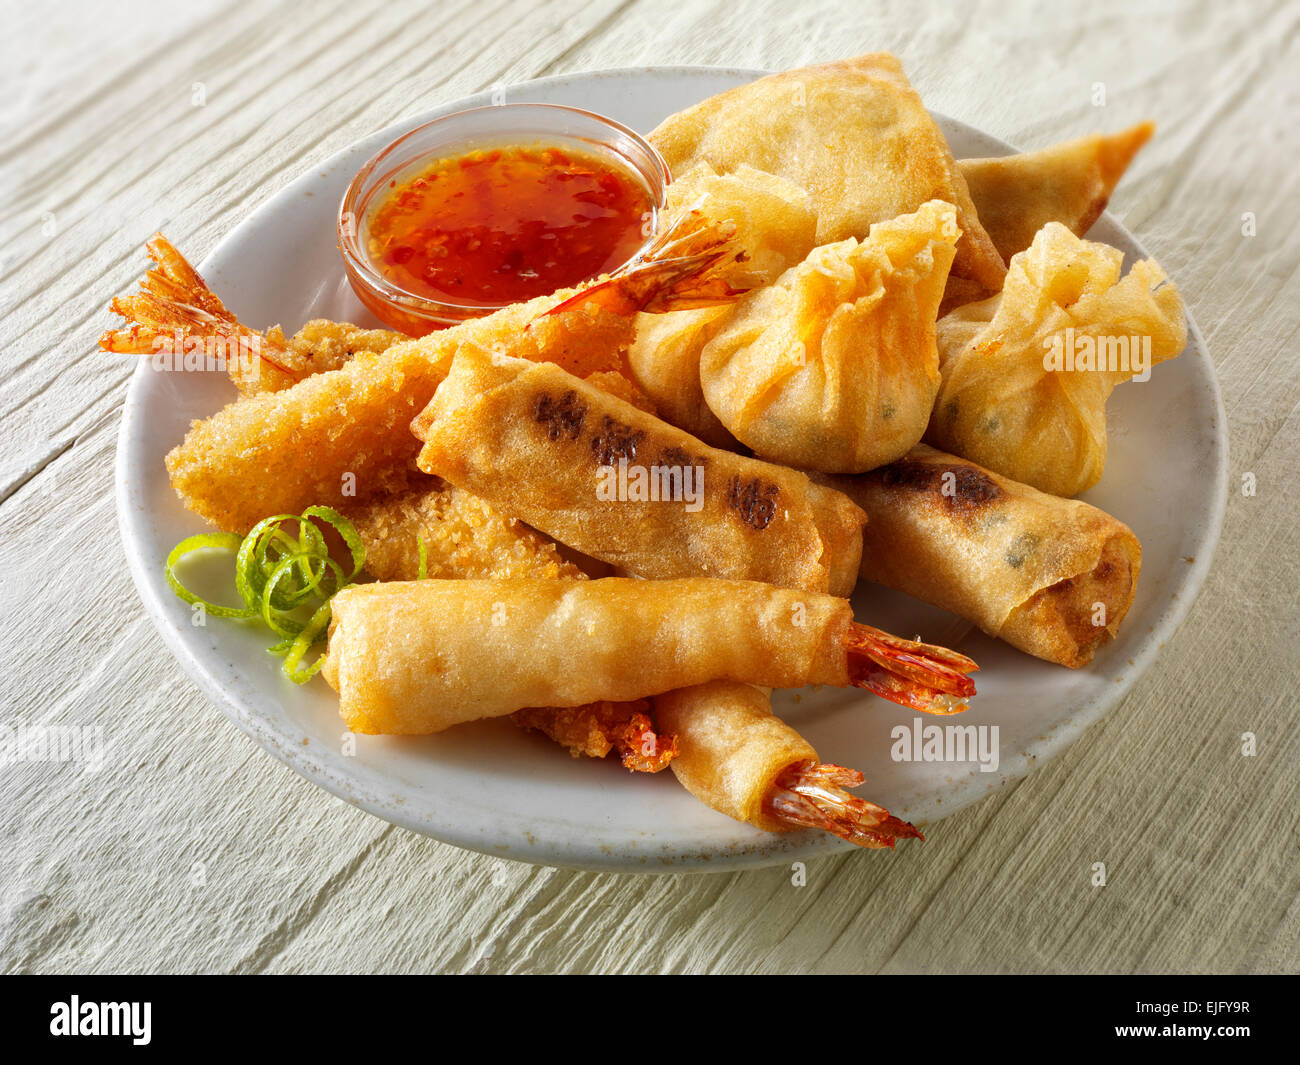 Démarreurs - Chinois mixte cuite dim sum, crevettes panées, rouleaux de printemps avec sauce chili servi sur une plaque blanche Banque D'Images